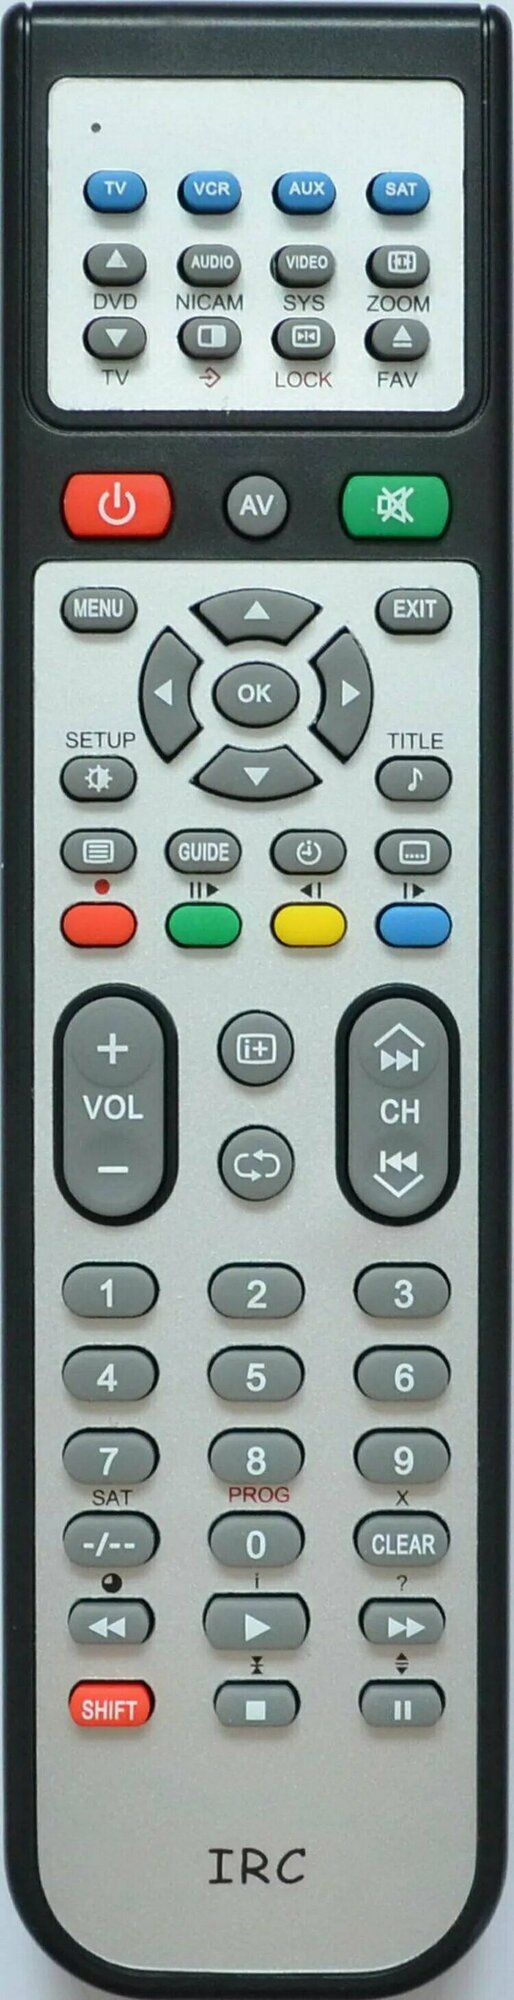 Пульт для DVD плеера BBK DV968S, URC-101